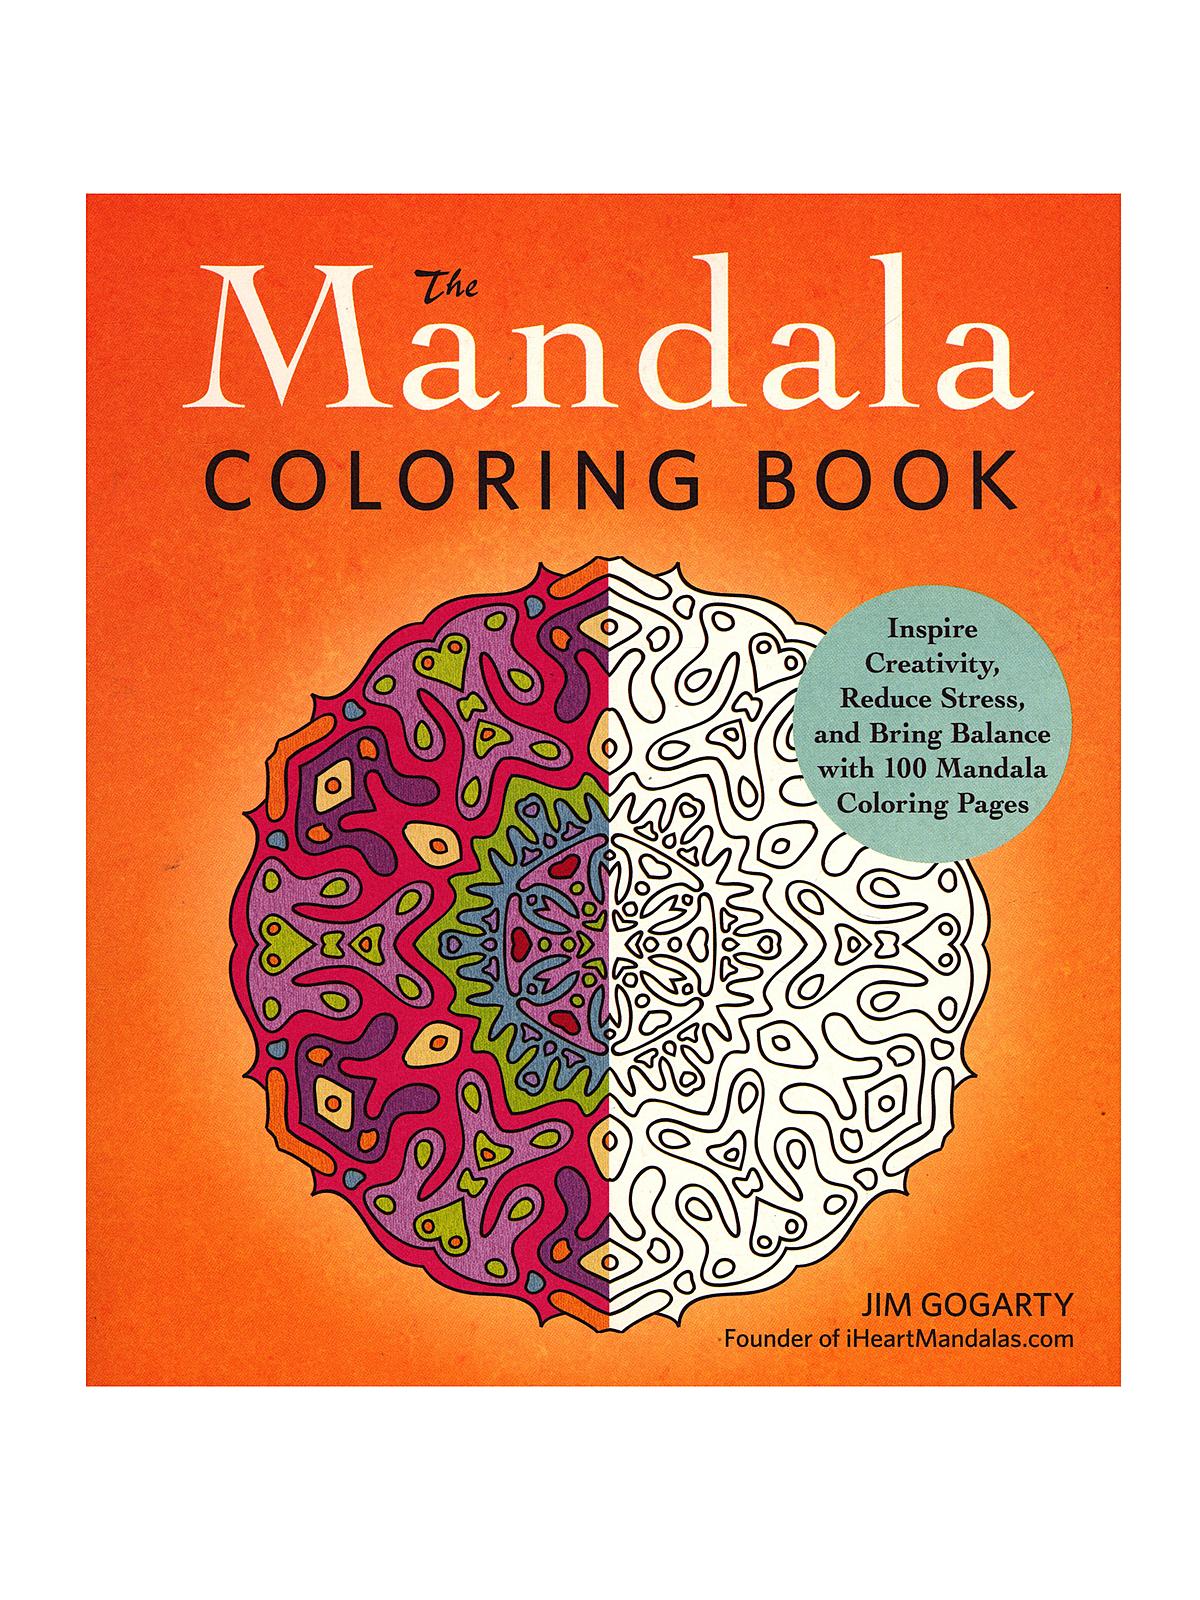 The Mandala Coloring Book Volume 1